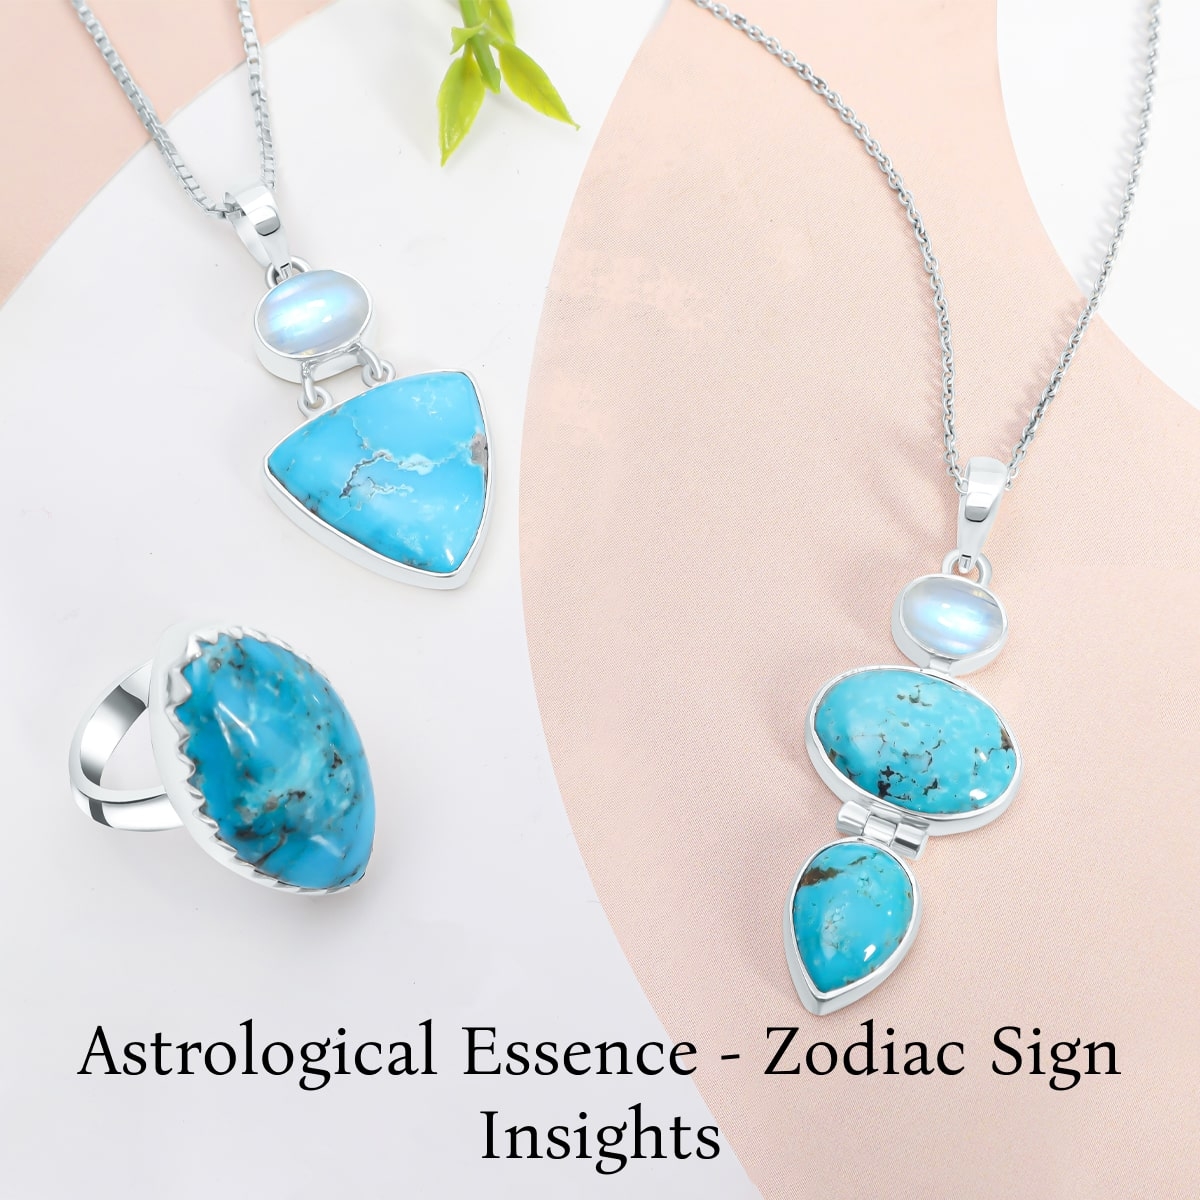 Zodiac sign associated